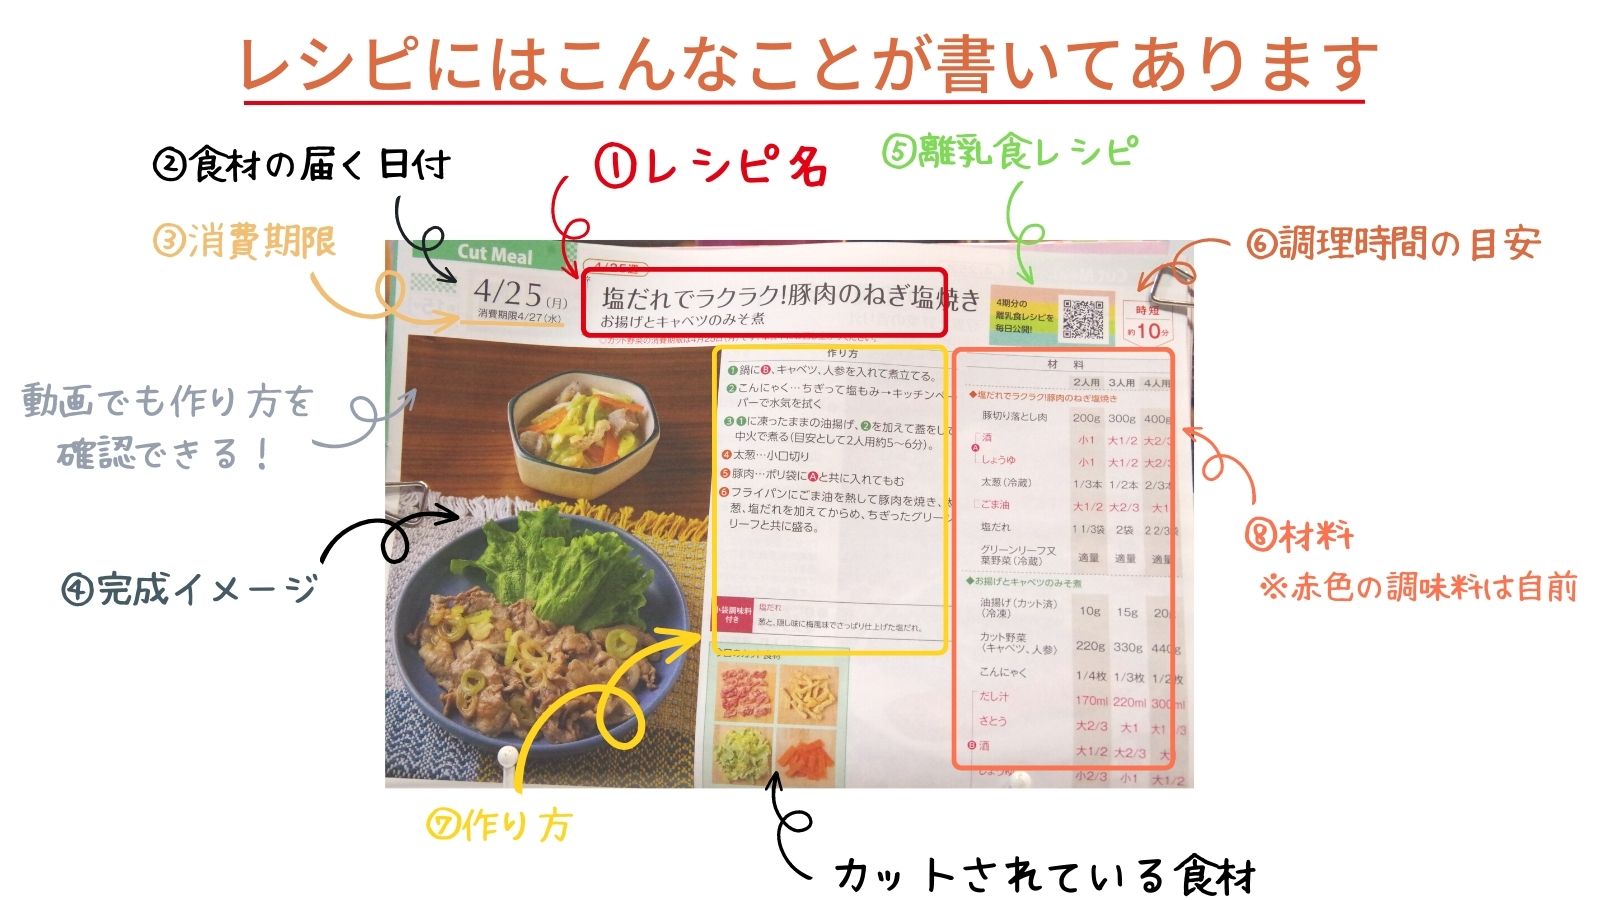 ヨシケイカットミールのレシピに書かれている内容